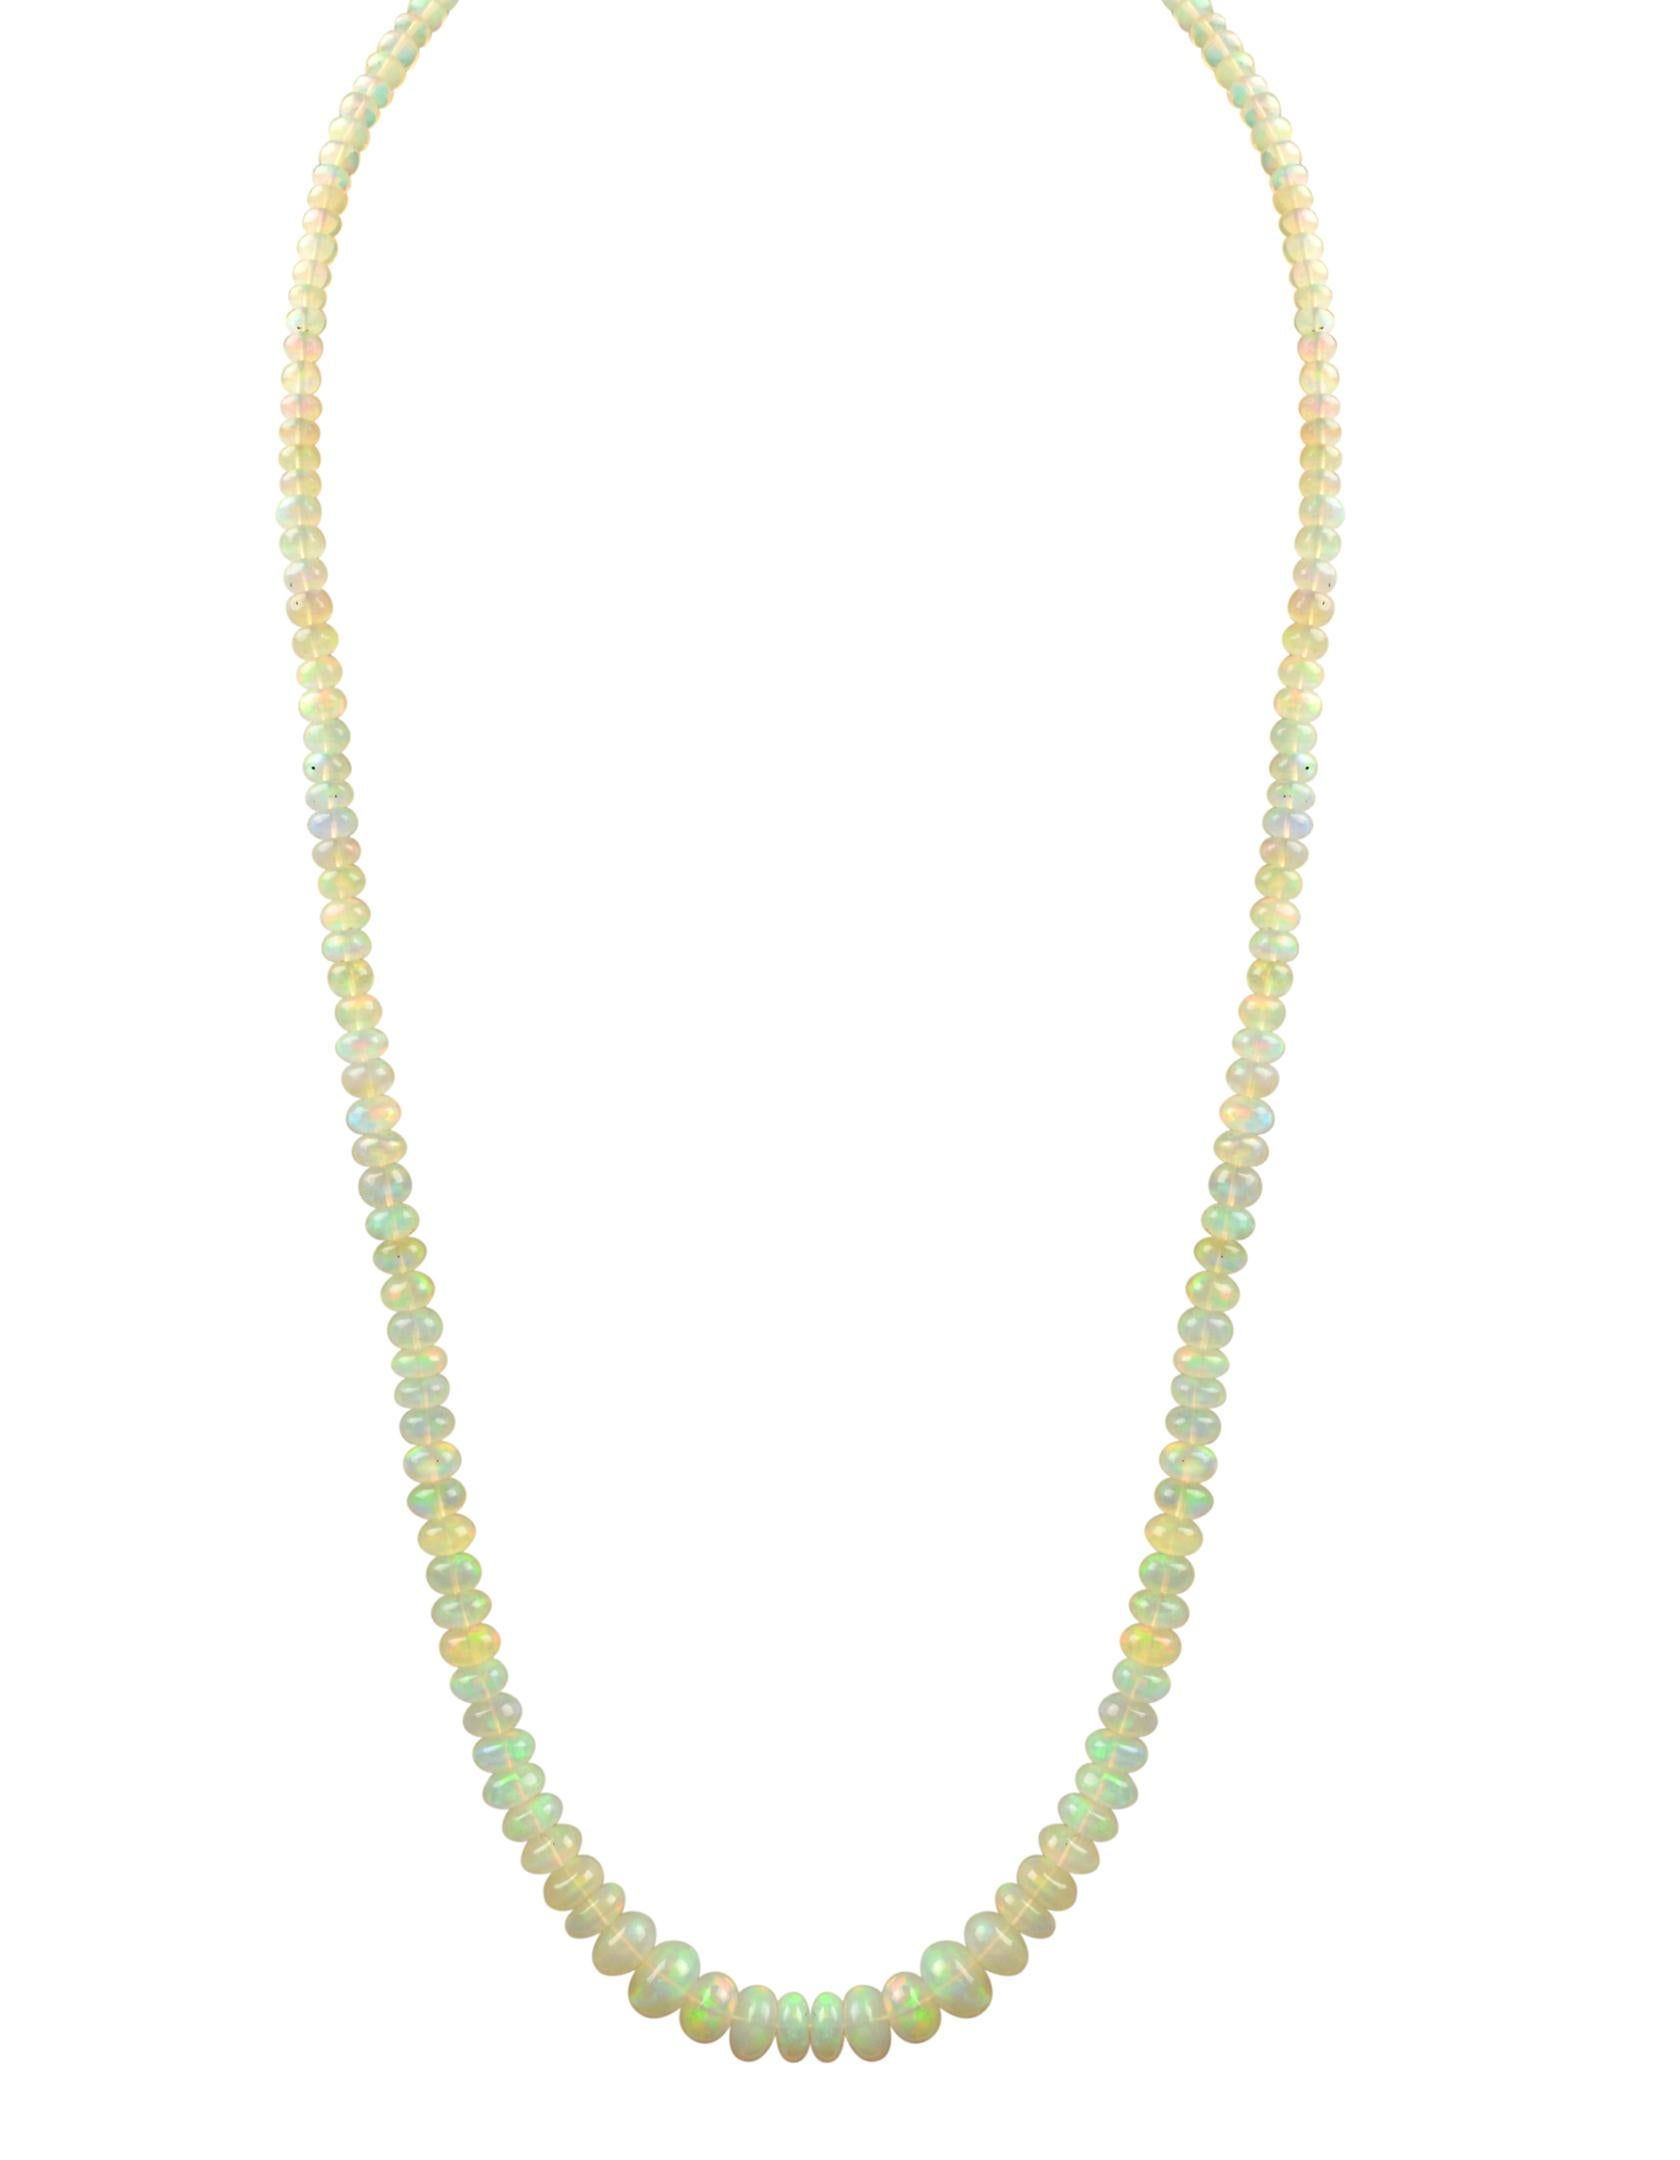  Einreihige Perlenkette mit natürlichem Opal und 14 Karat Karabinerverschluss. Dies sind äthiopische Perlen
20 bis 21 Zoll lang 
1 Schichten aus natürlichem Opal  Perlen
Diese Perlen sind glatt, haben  sehr viel  Lüster und Glanz
Schöne